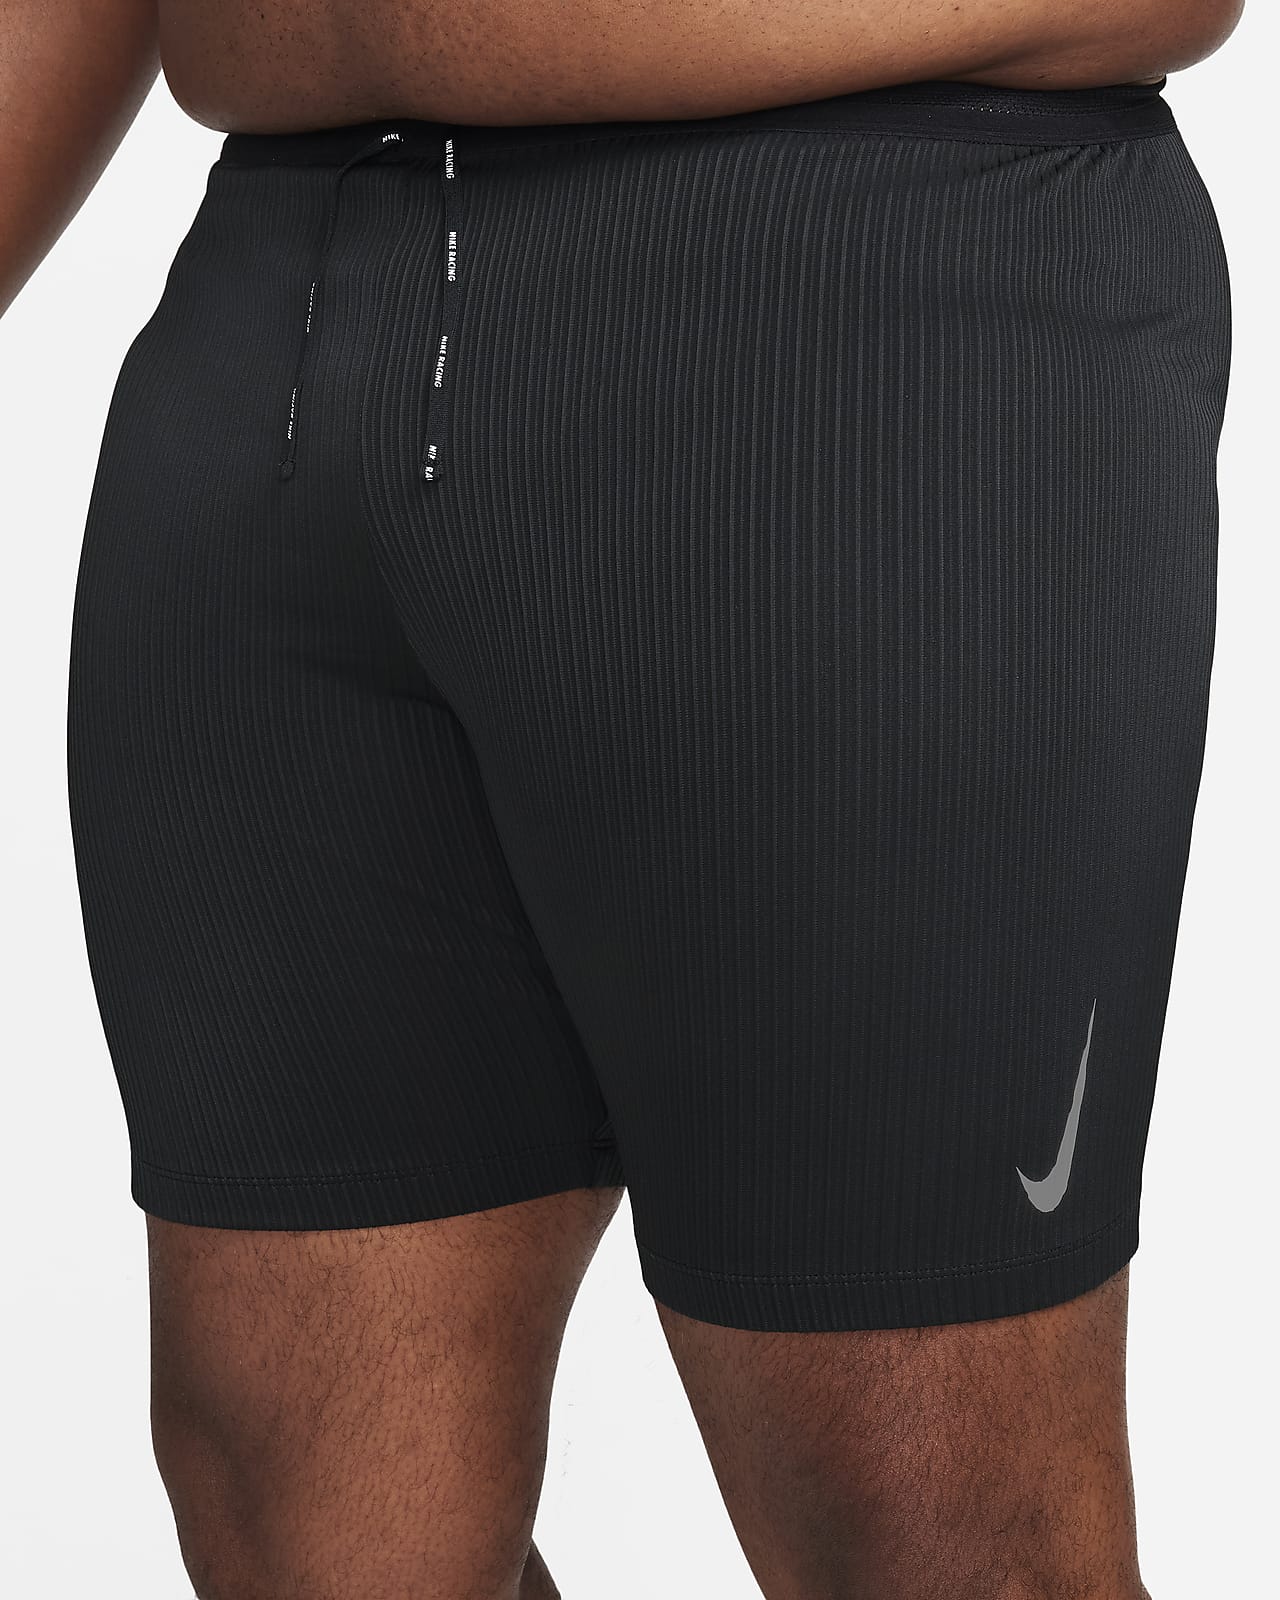 Nike Men's Pro Fleece Running Pants | Dick's Sporting Goods